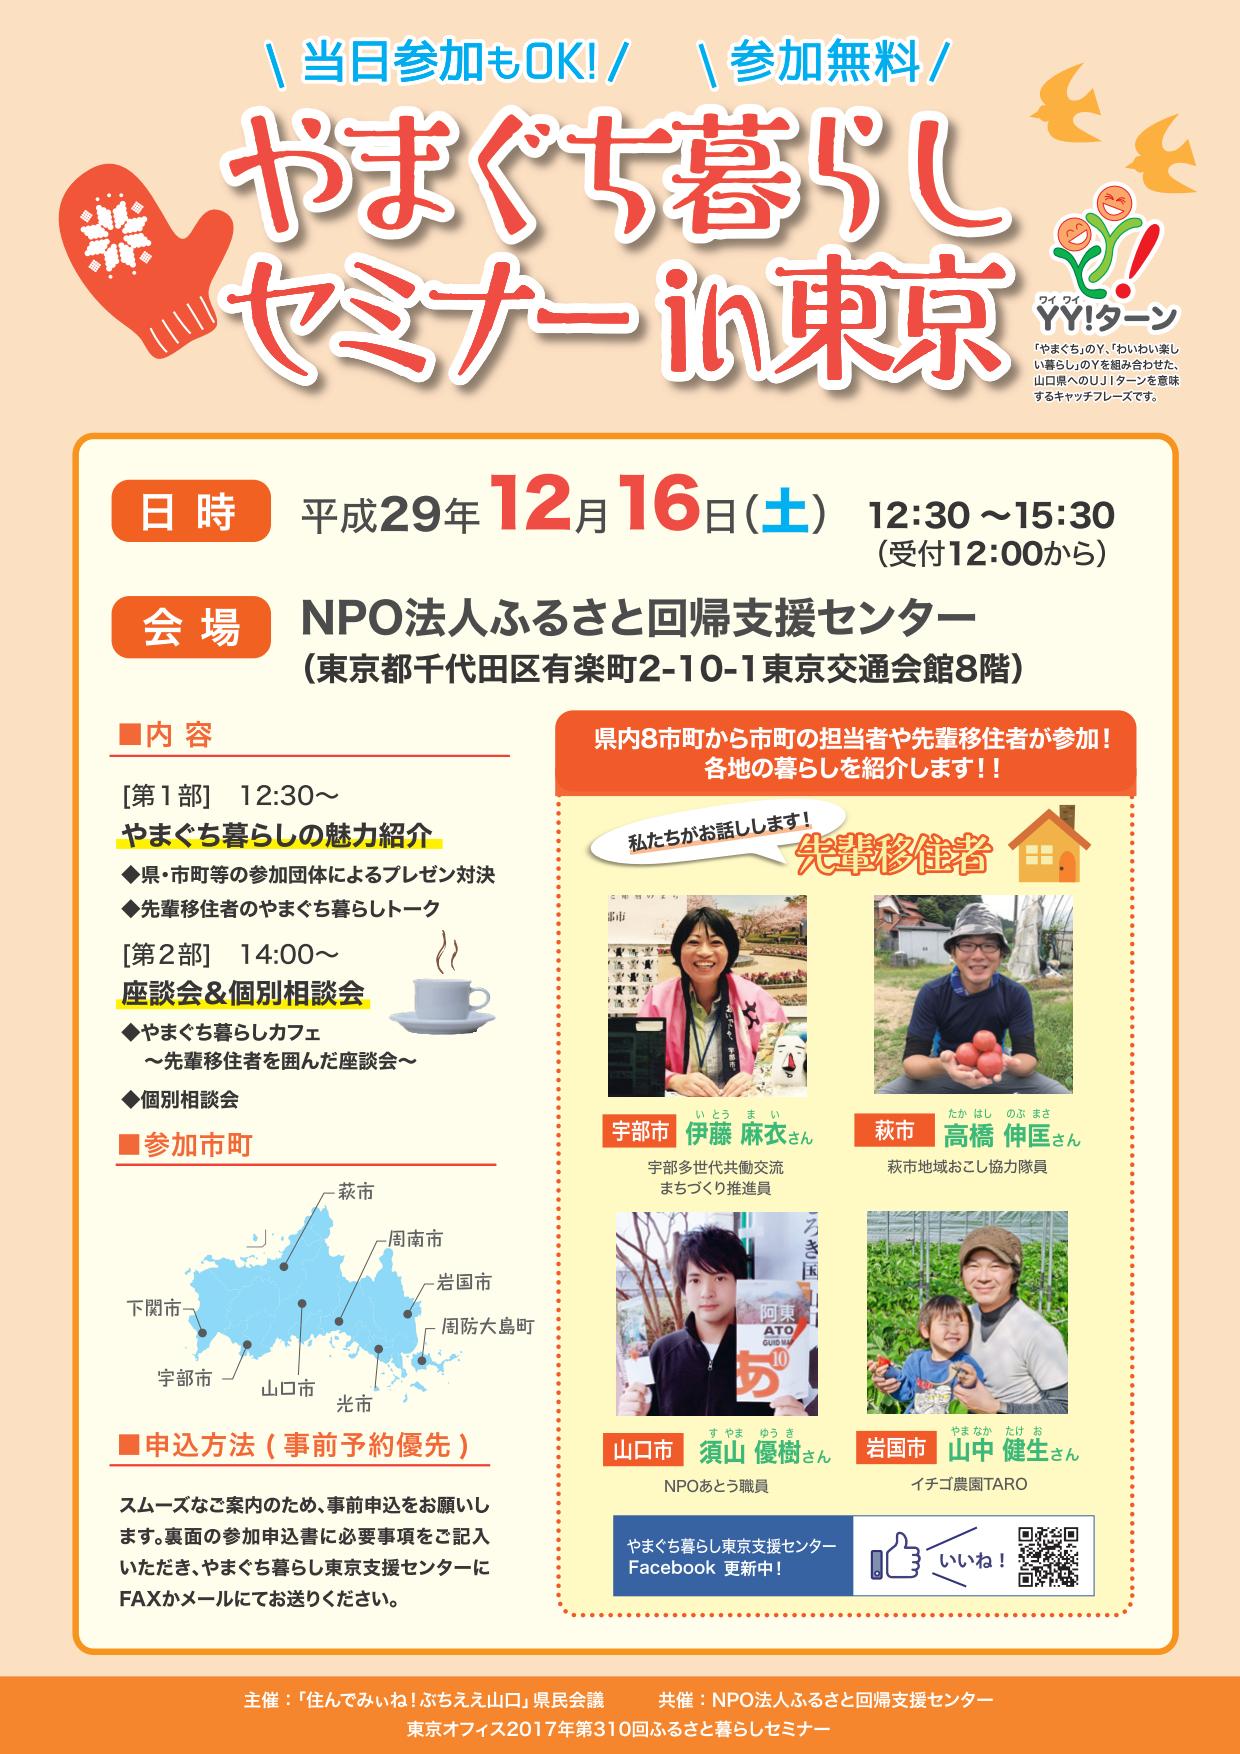 やまぐち暮らしセミナーin東京 | 移住関連イベント情報